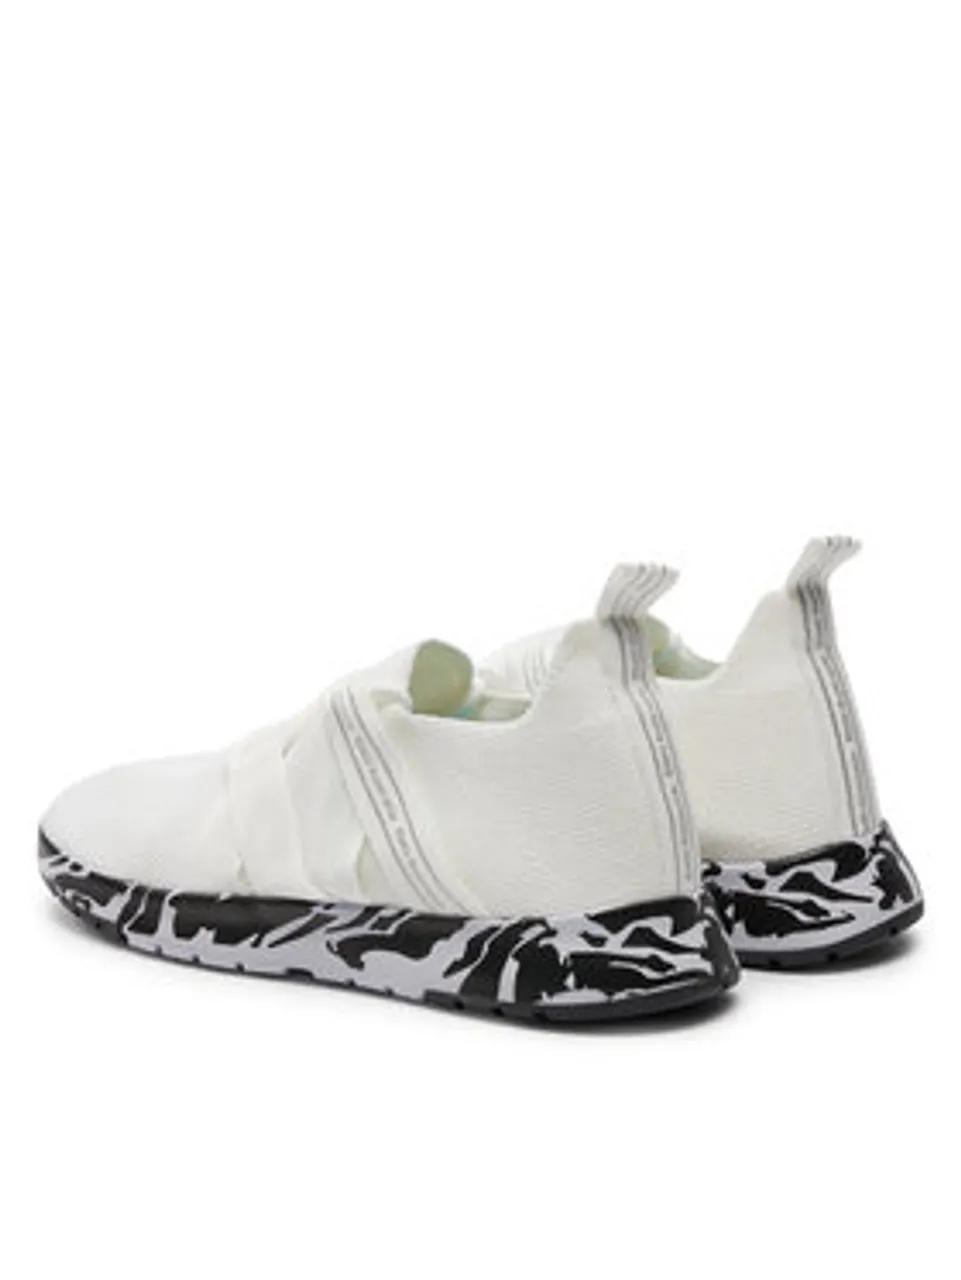 EMU Australia Sneakers Leura Swirl W13030 Weiß